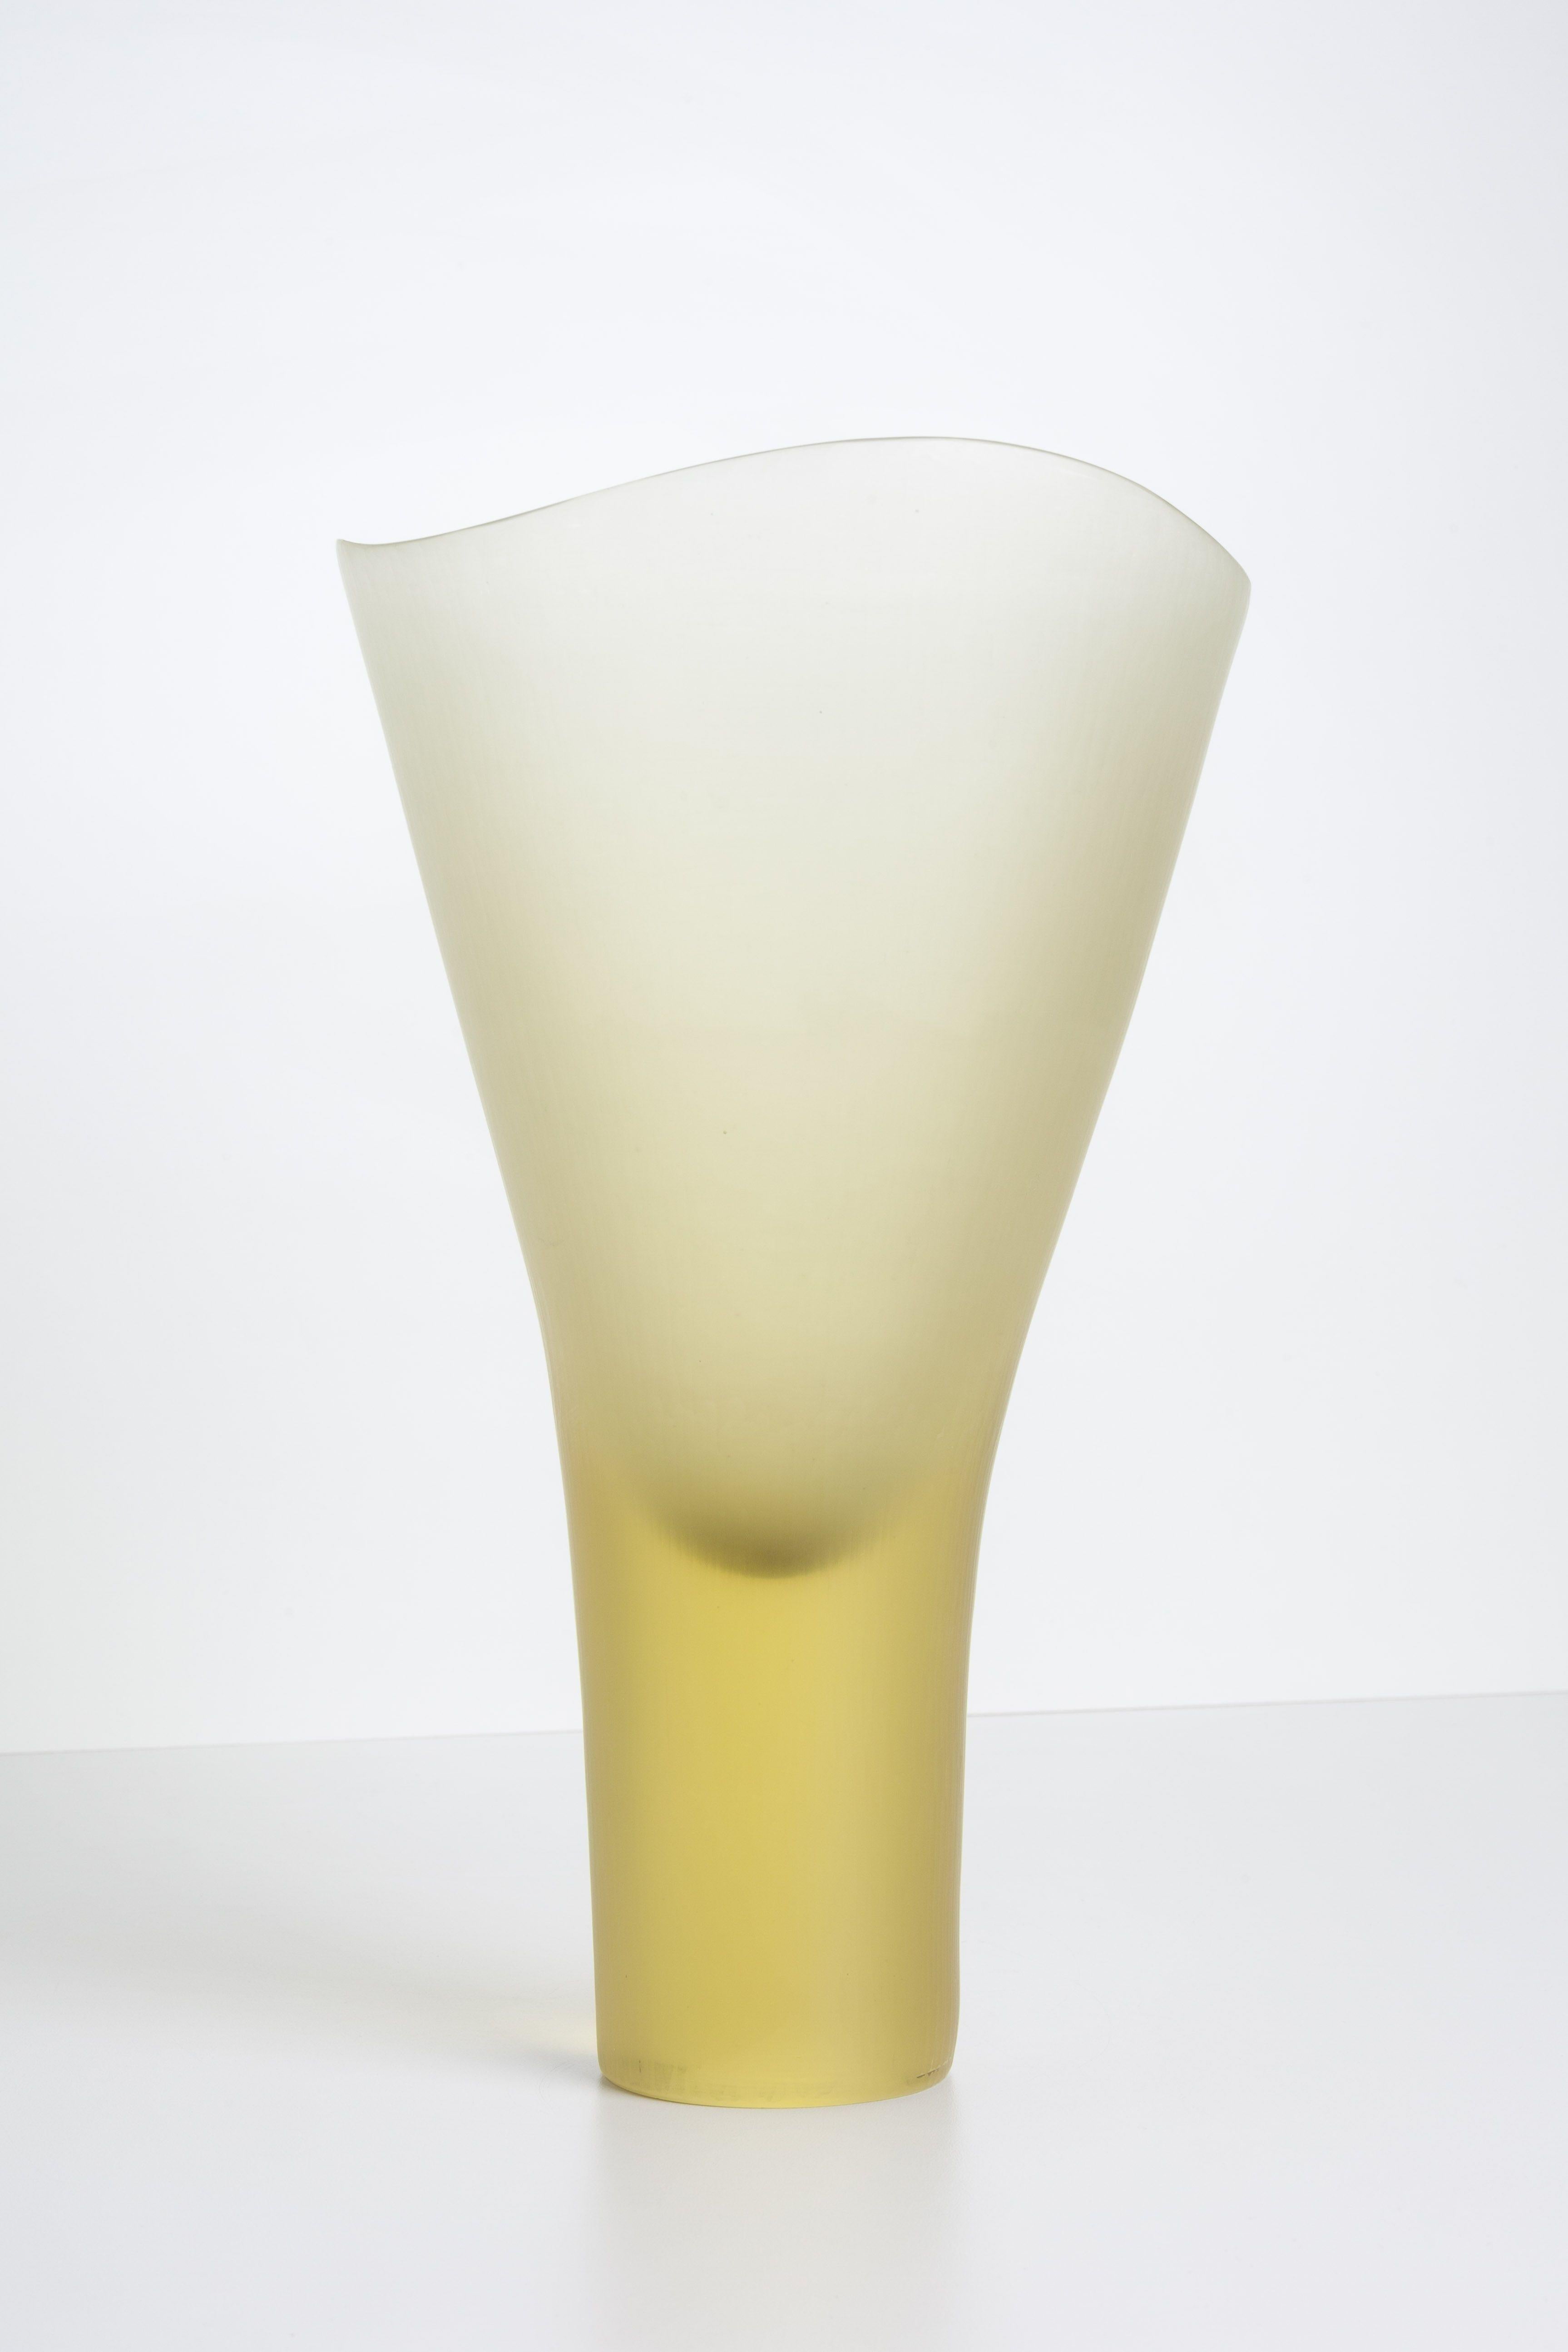 Mid-20th Century Tobia Scarpa Battuto Vase for Venini For Sale